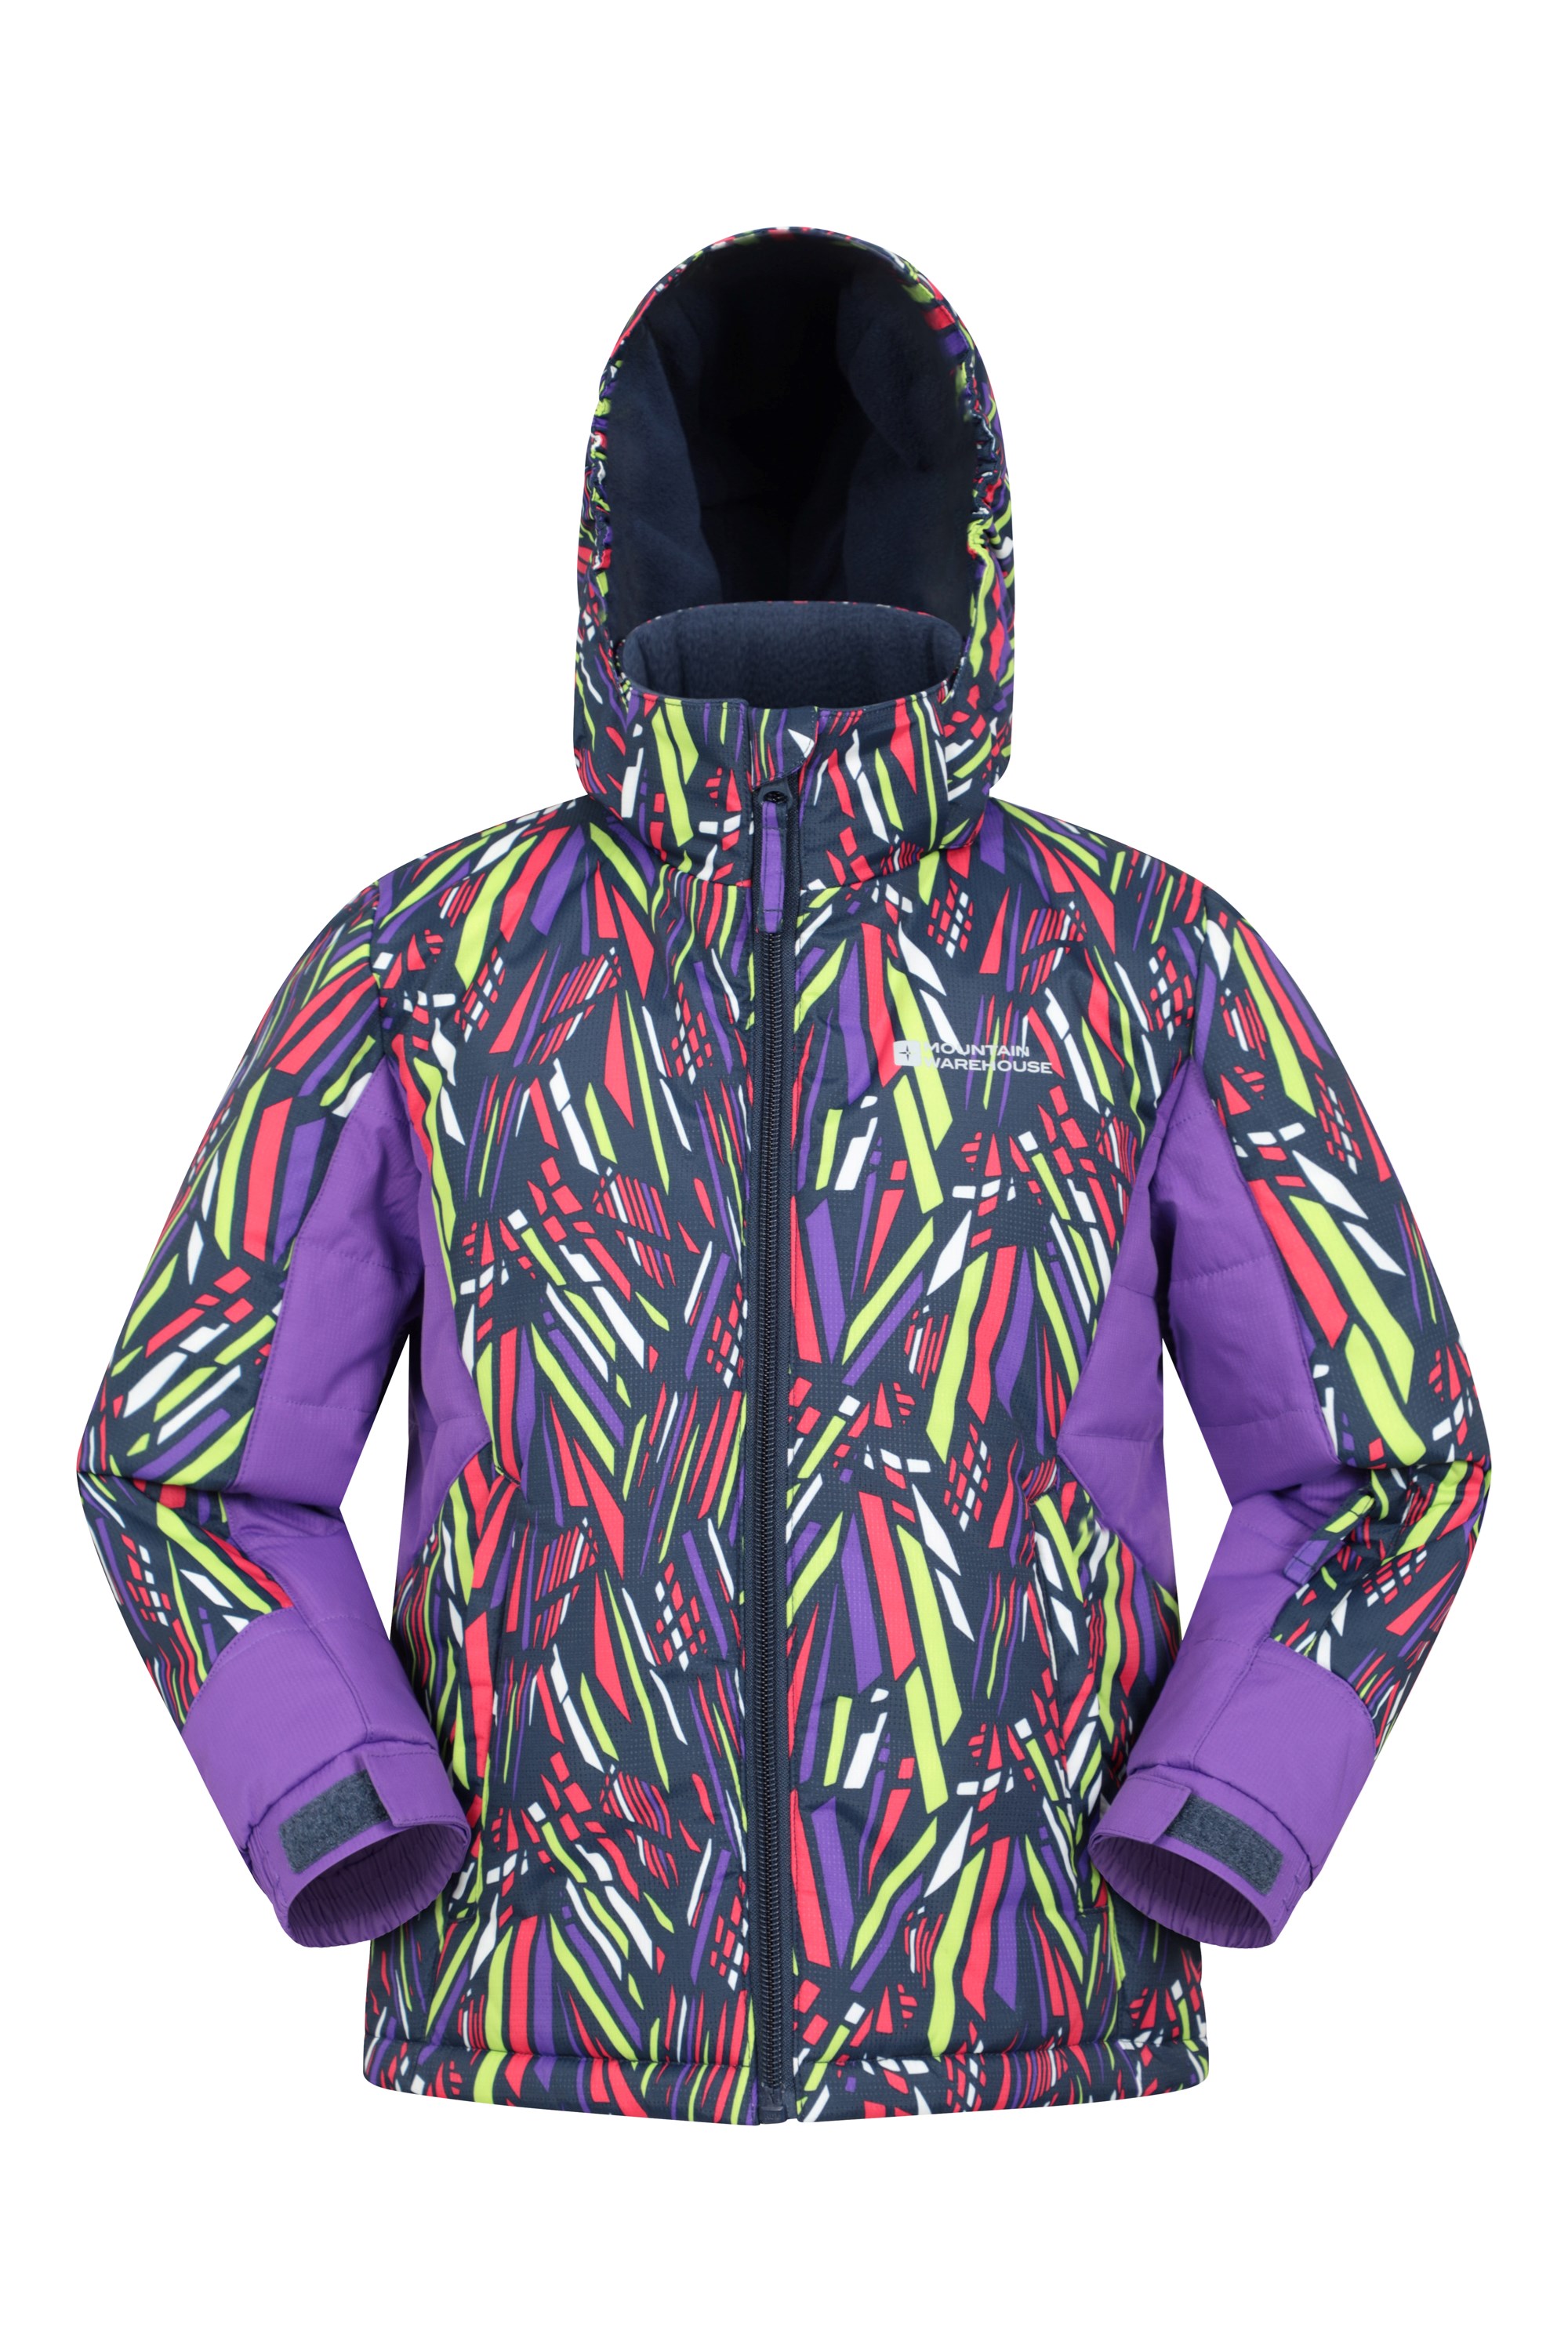 Vortex Kids Printed Ski Jacket - Neon Brights